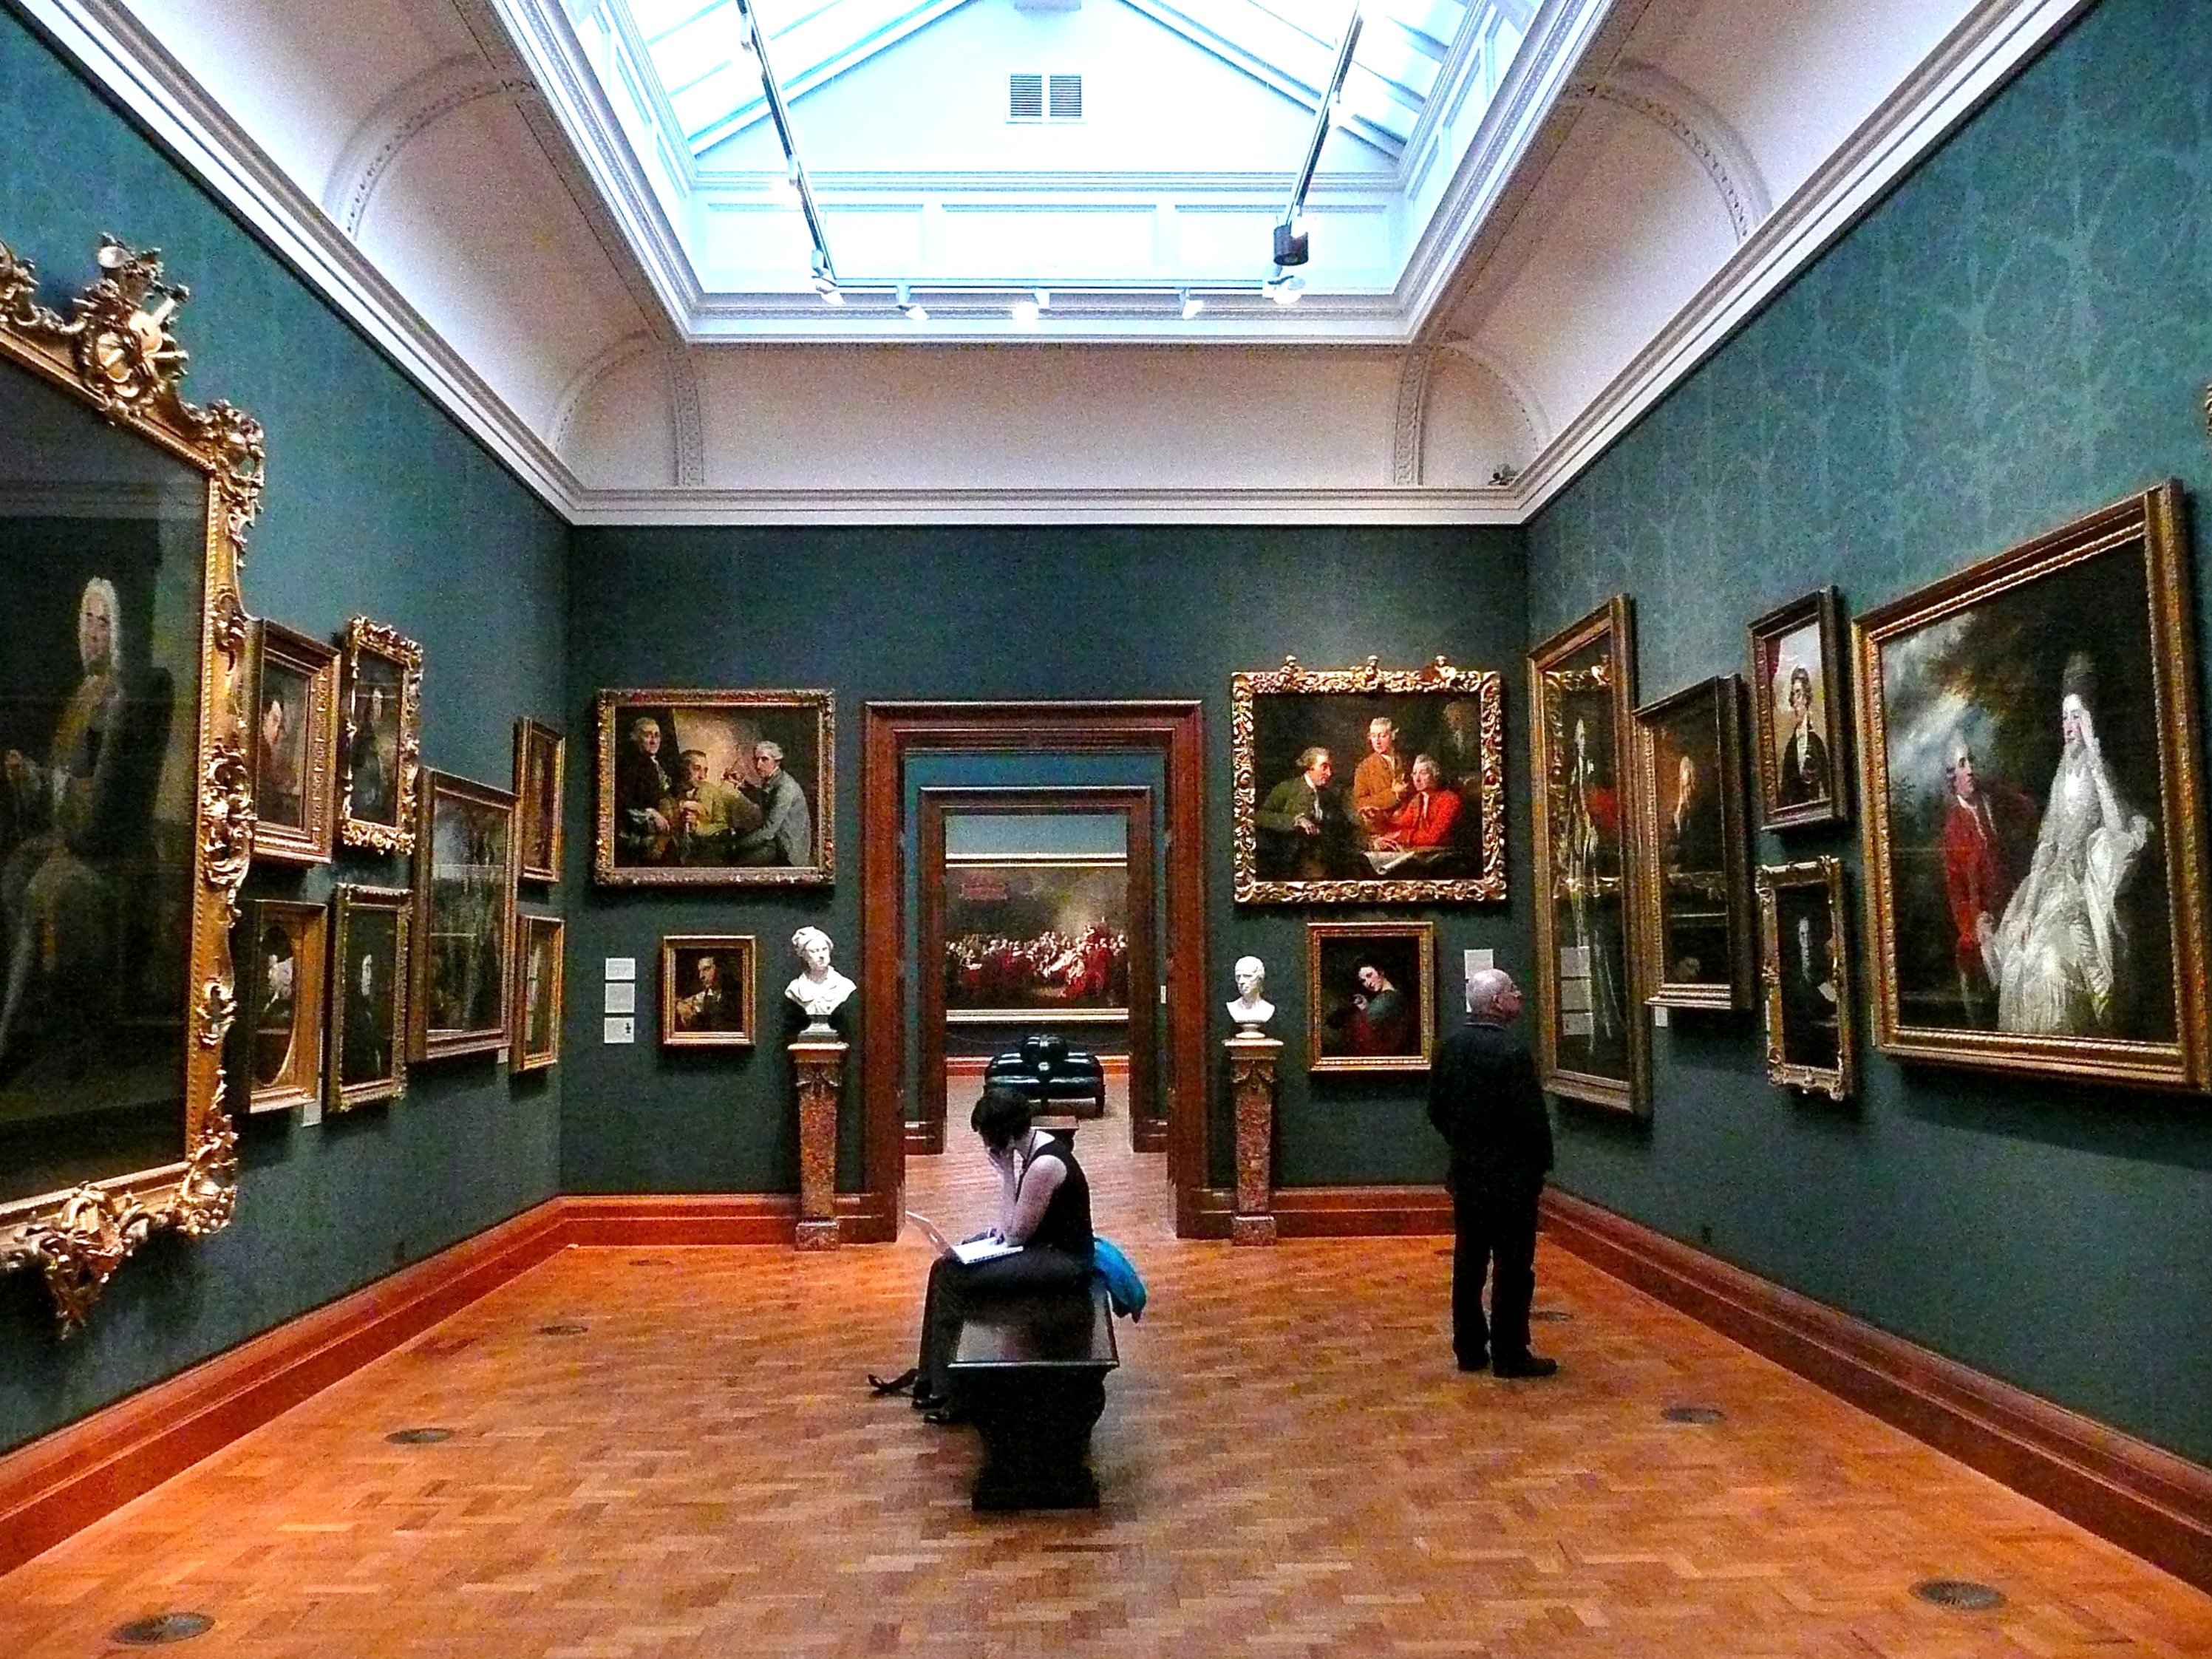 file-2008-inside-the-national-portrait-gallery-london-jpg-wikipedia